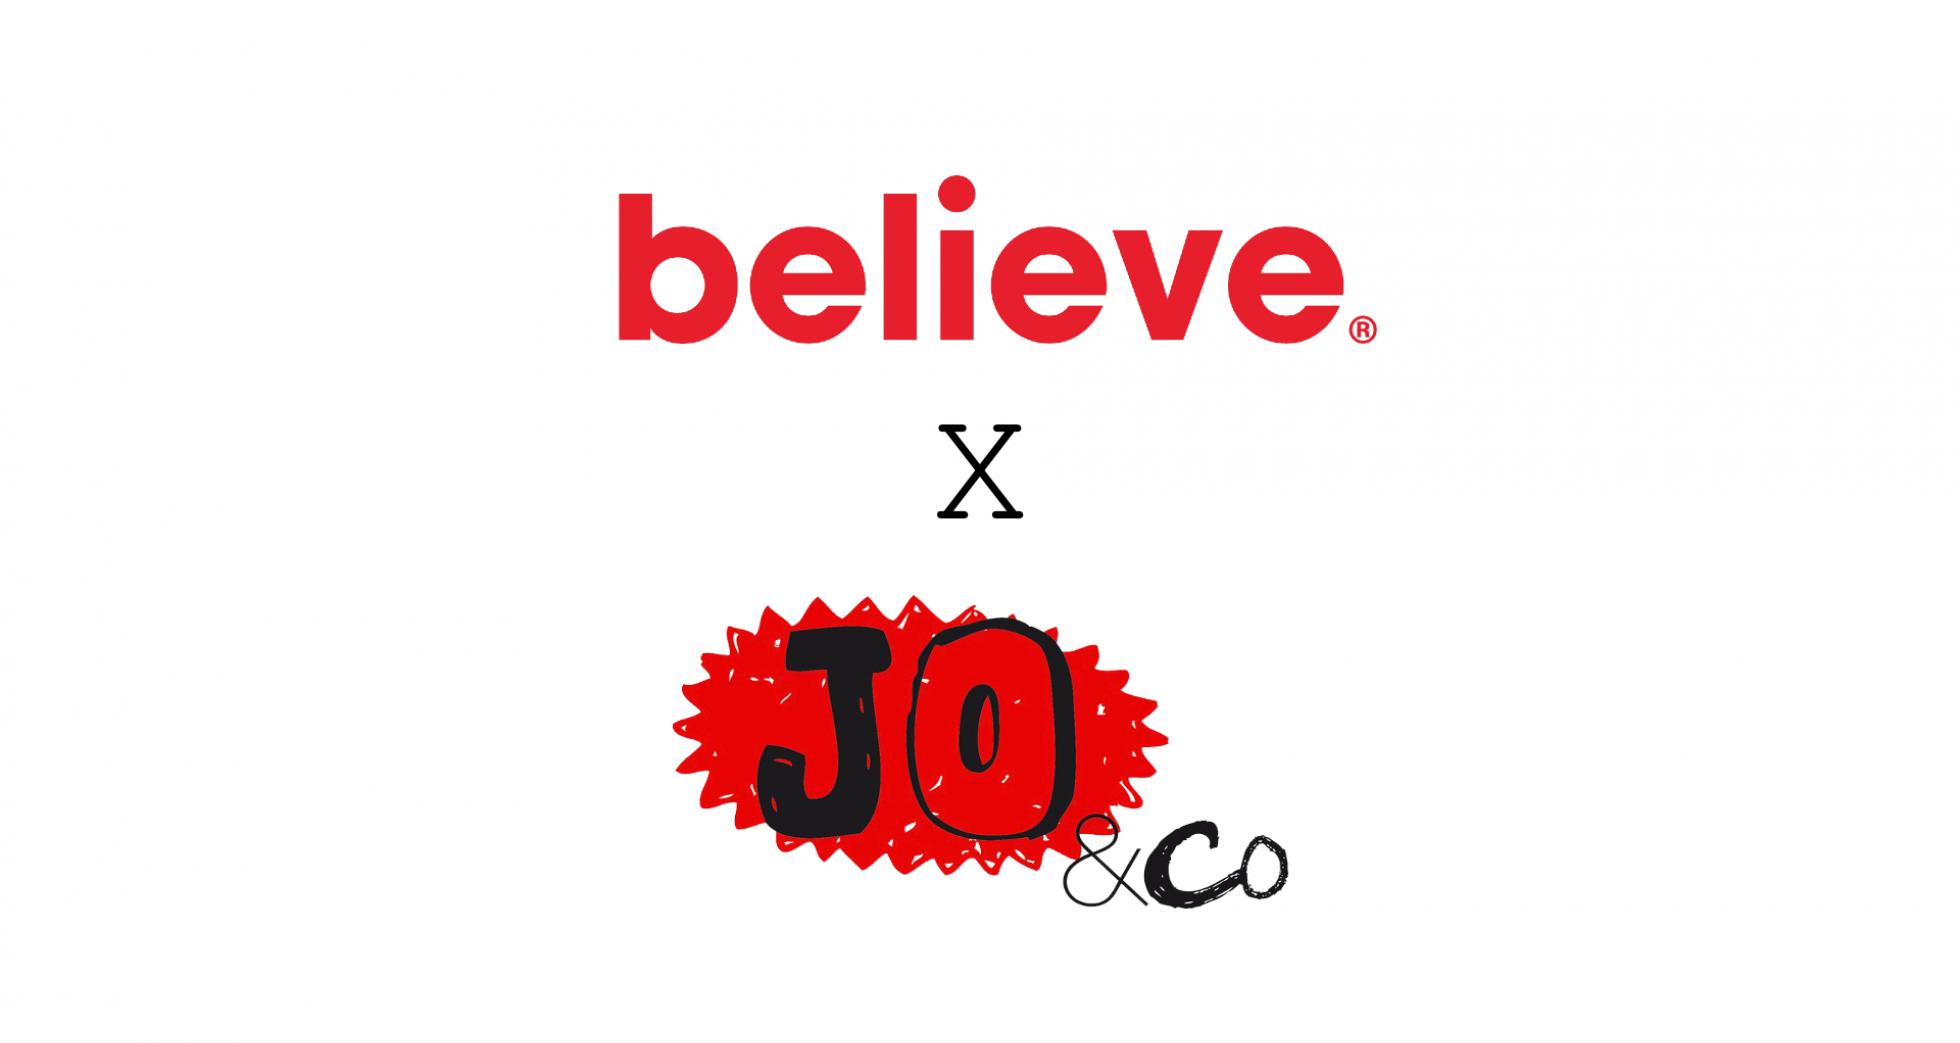 Believe x Jo&Co_V2